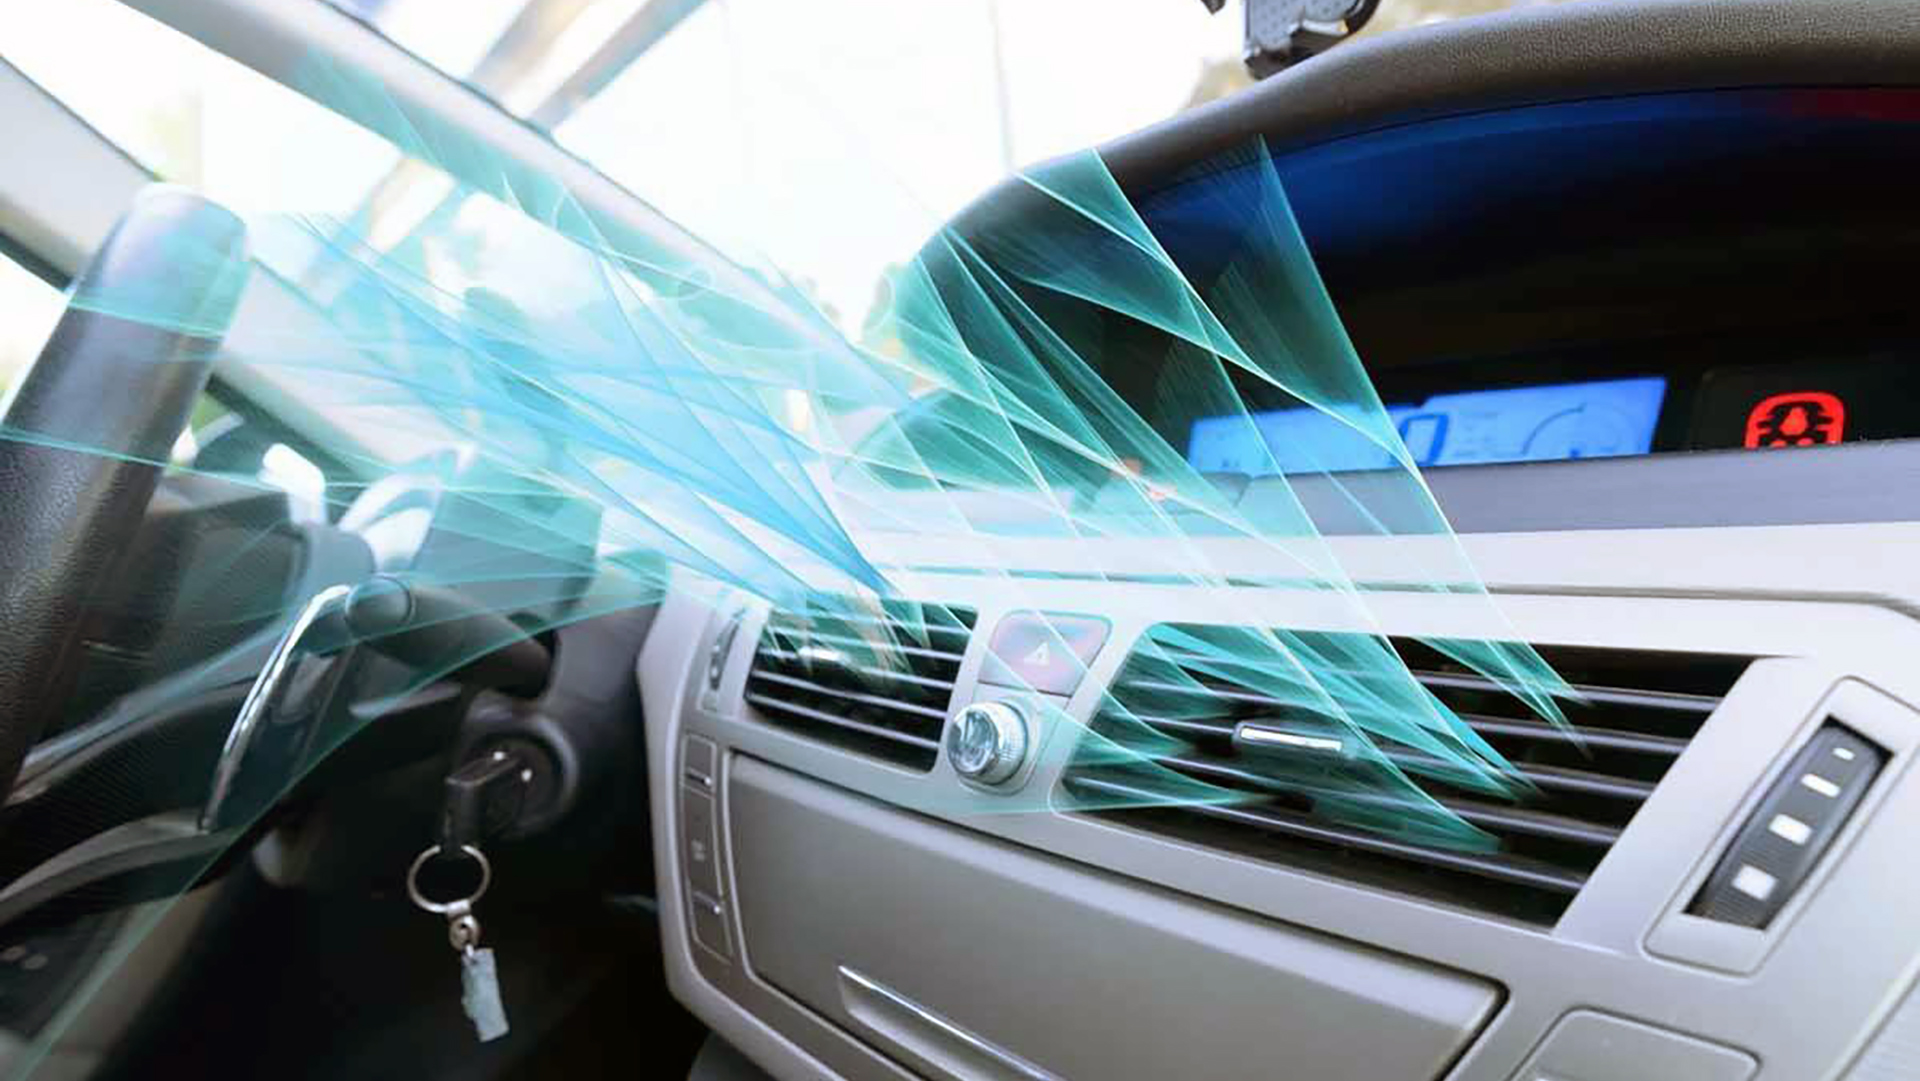 Ventilación, calefacción y aire acondionado, las tres formas de climatizar el interior de un automóvil, con sus cualidades propias y comunes